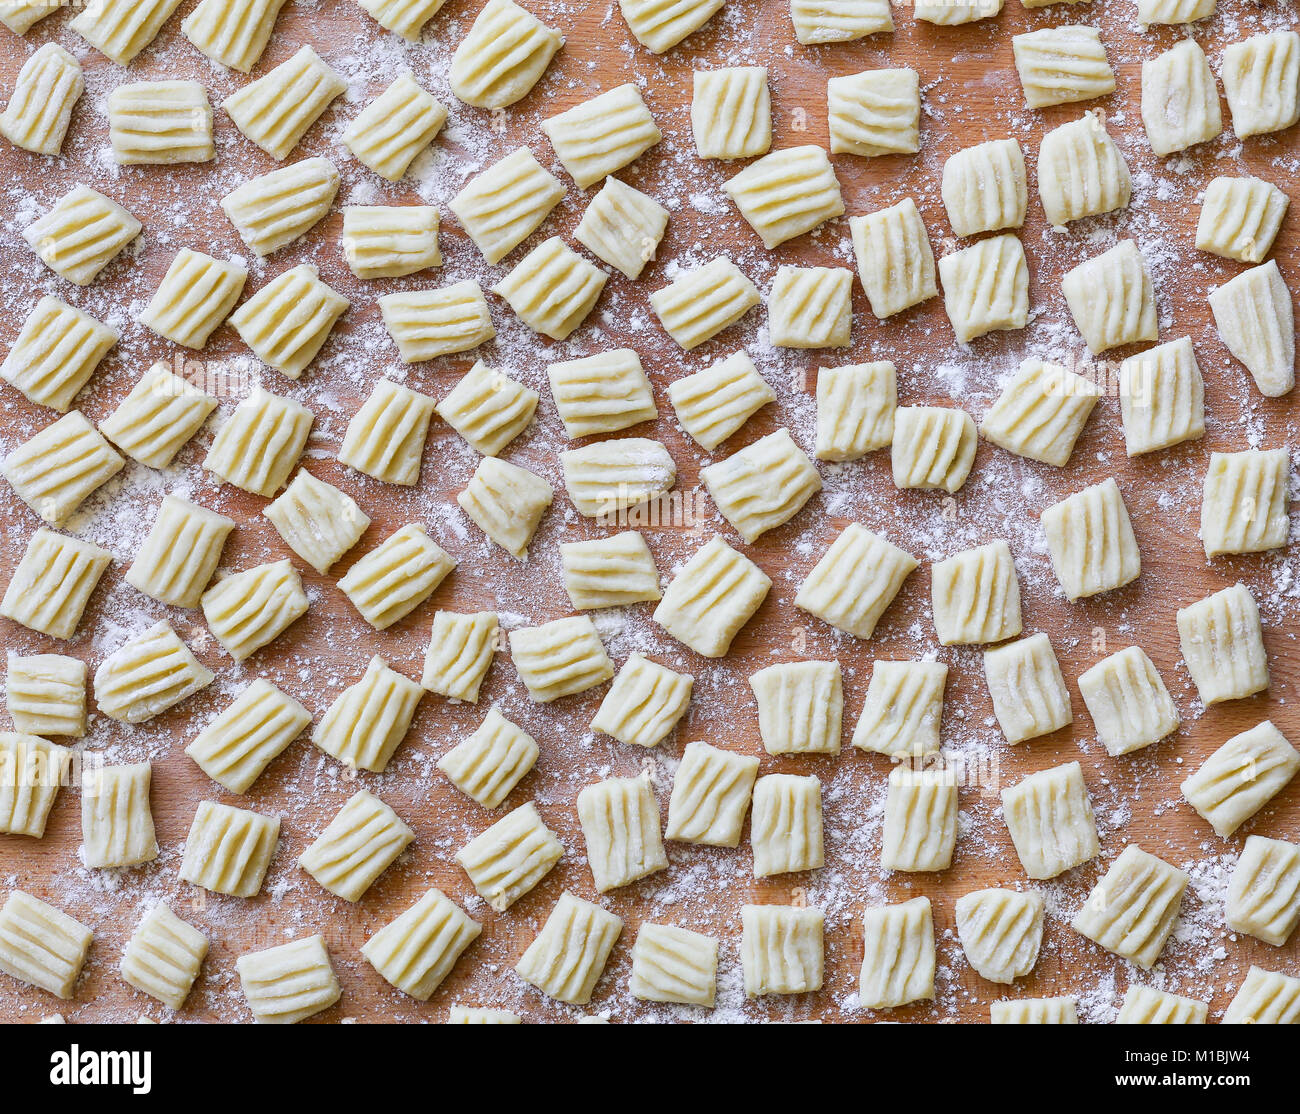 L'italiano non cotti di pasta fatta in casa gnocchi su pannello di legno Foto Stock